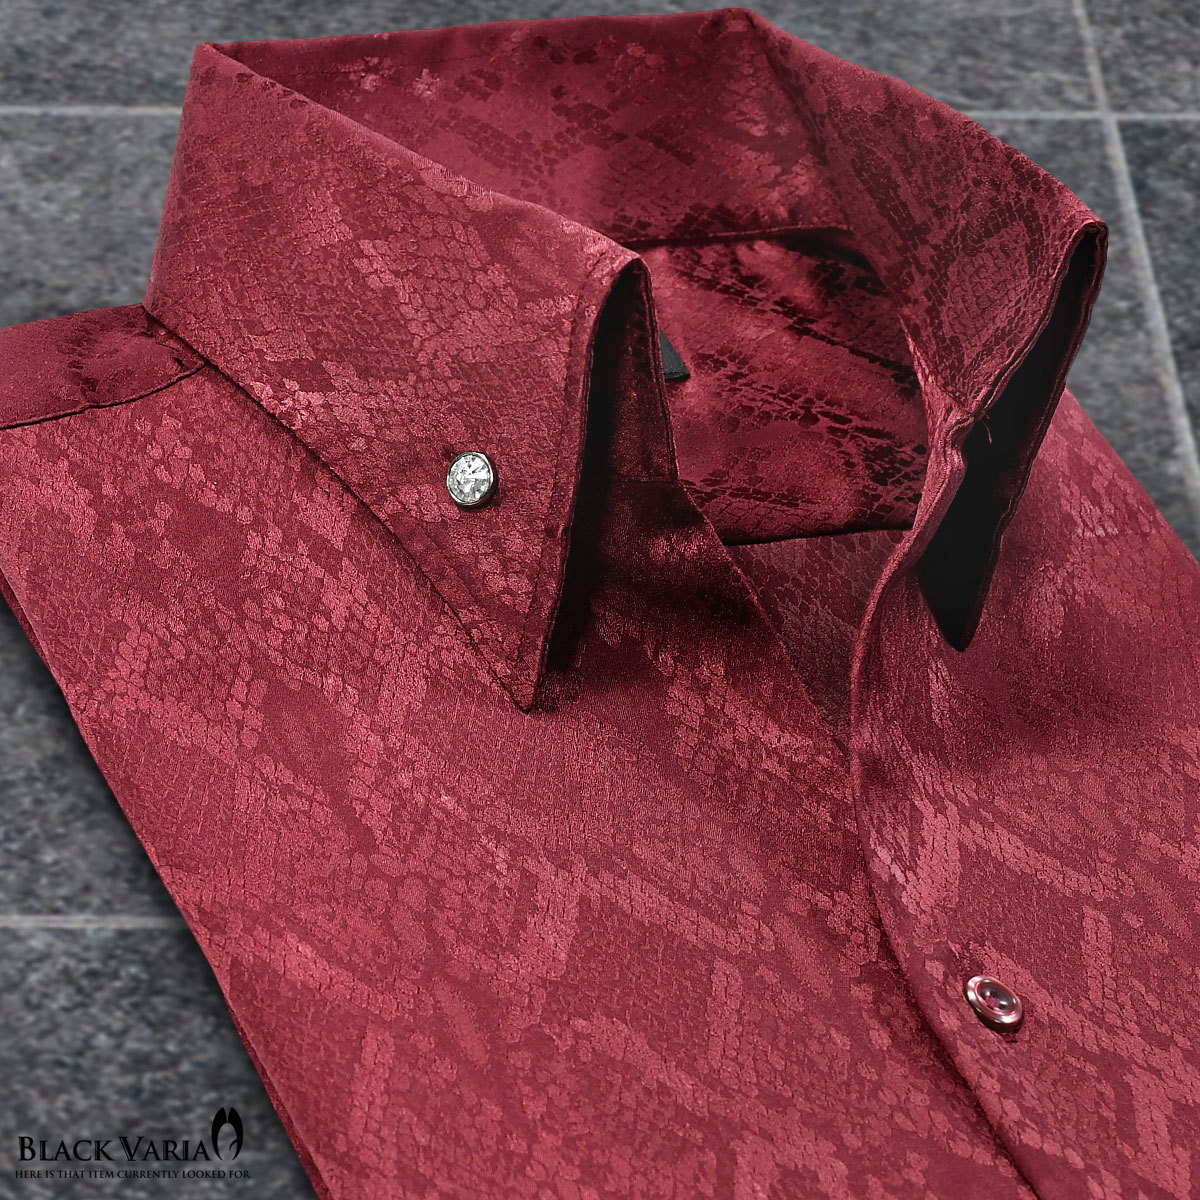 191250-win BLACK VARIA パイソン蛇柄 ジャガード イタリアンカラー ボタンダウン 長袖ドレスシャツ メンズ(ワインレッド赤) XL 発表会_画像1